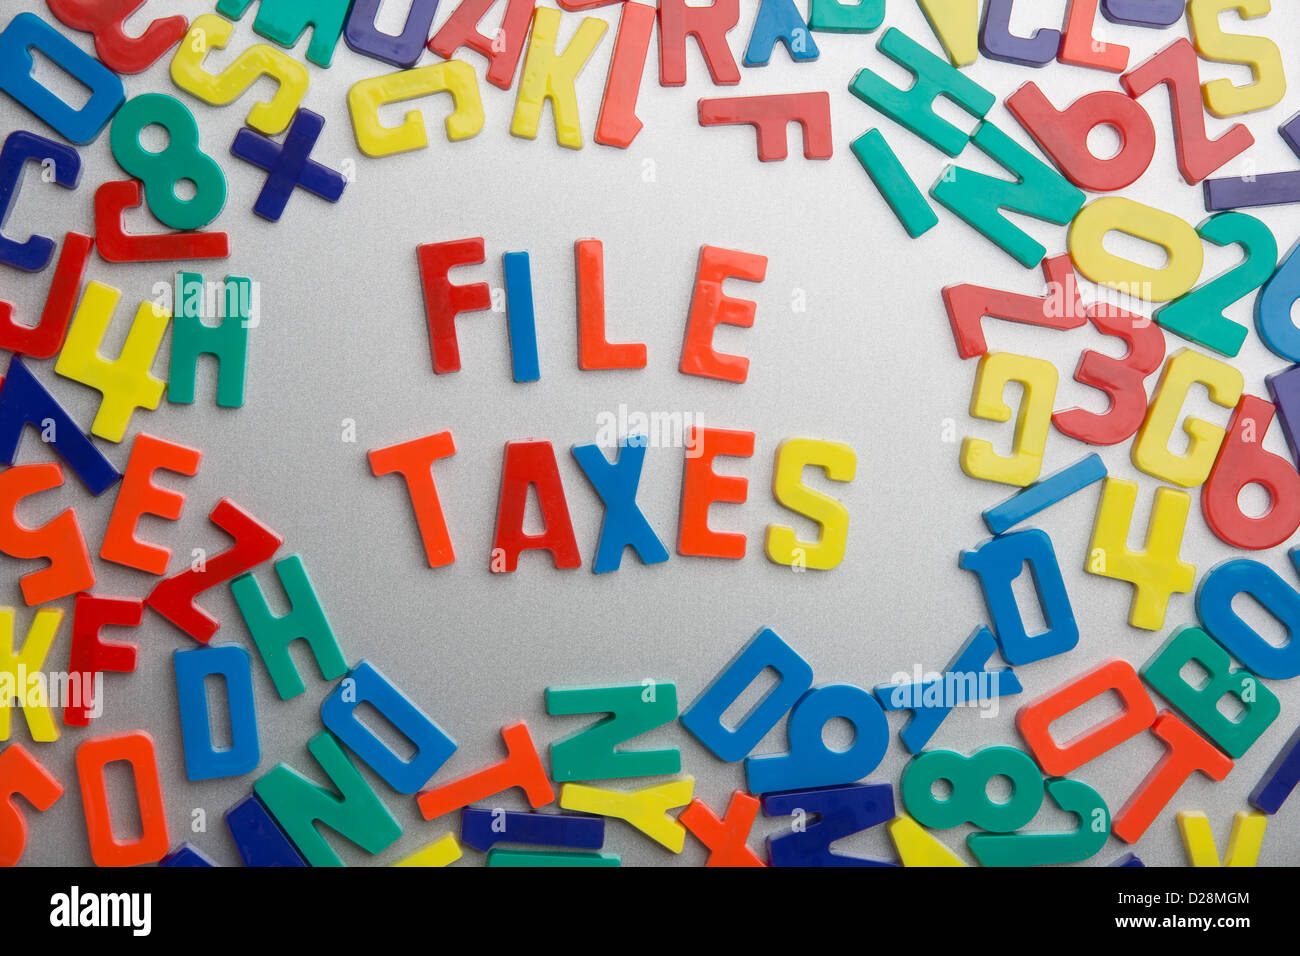 Taxes 'Fichier' - aimants pour réfrigérateur sort un message d'un fouillis de lettres Banque D'Images